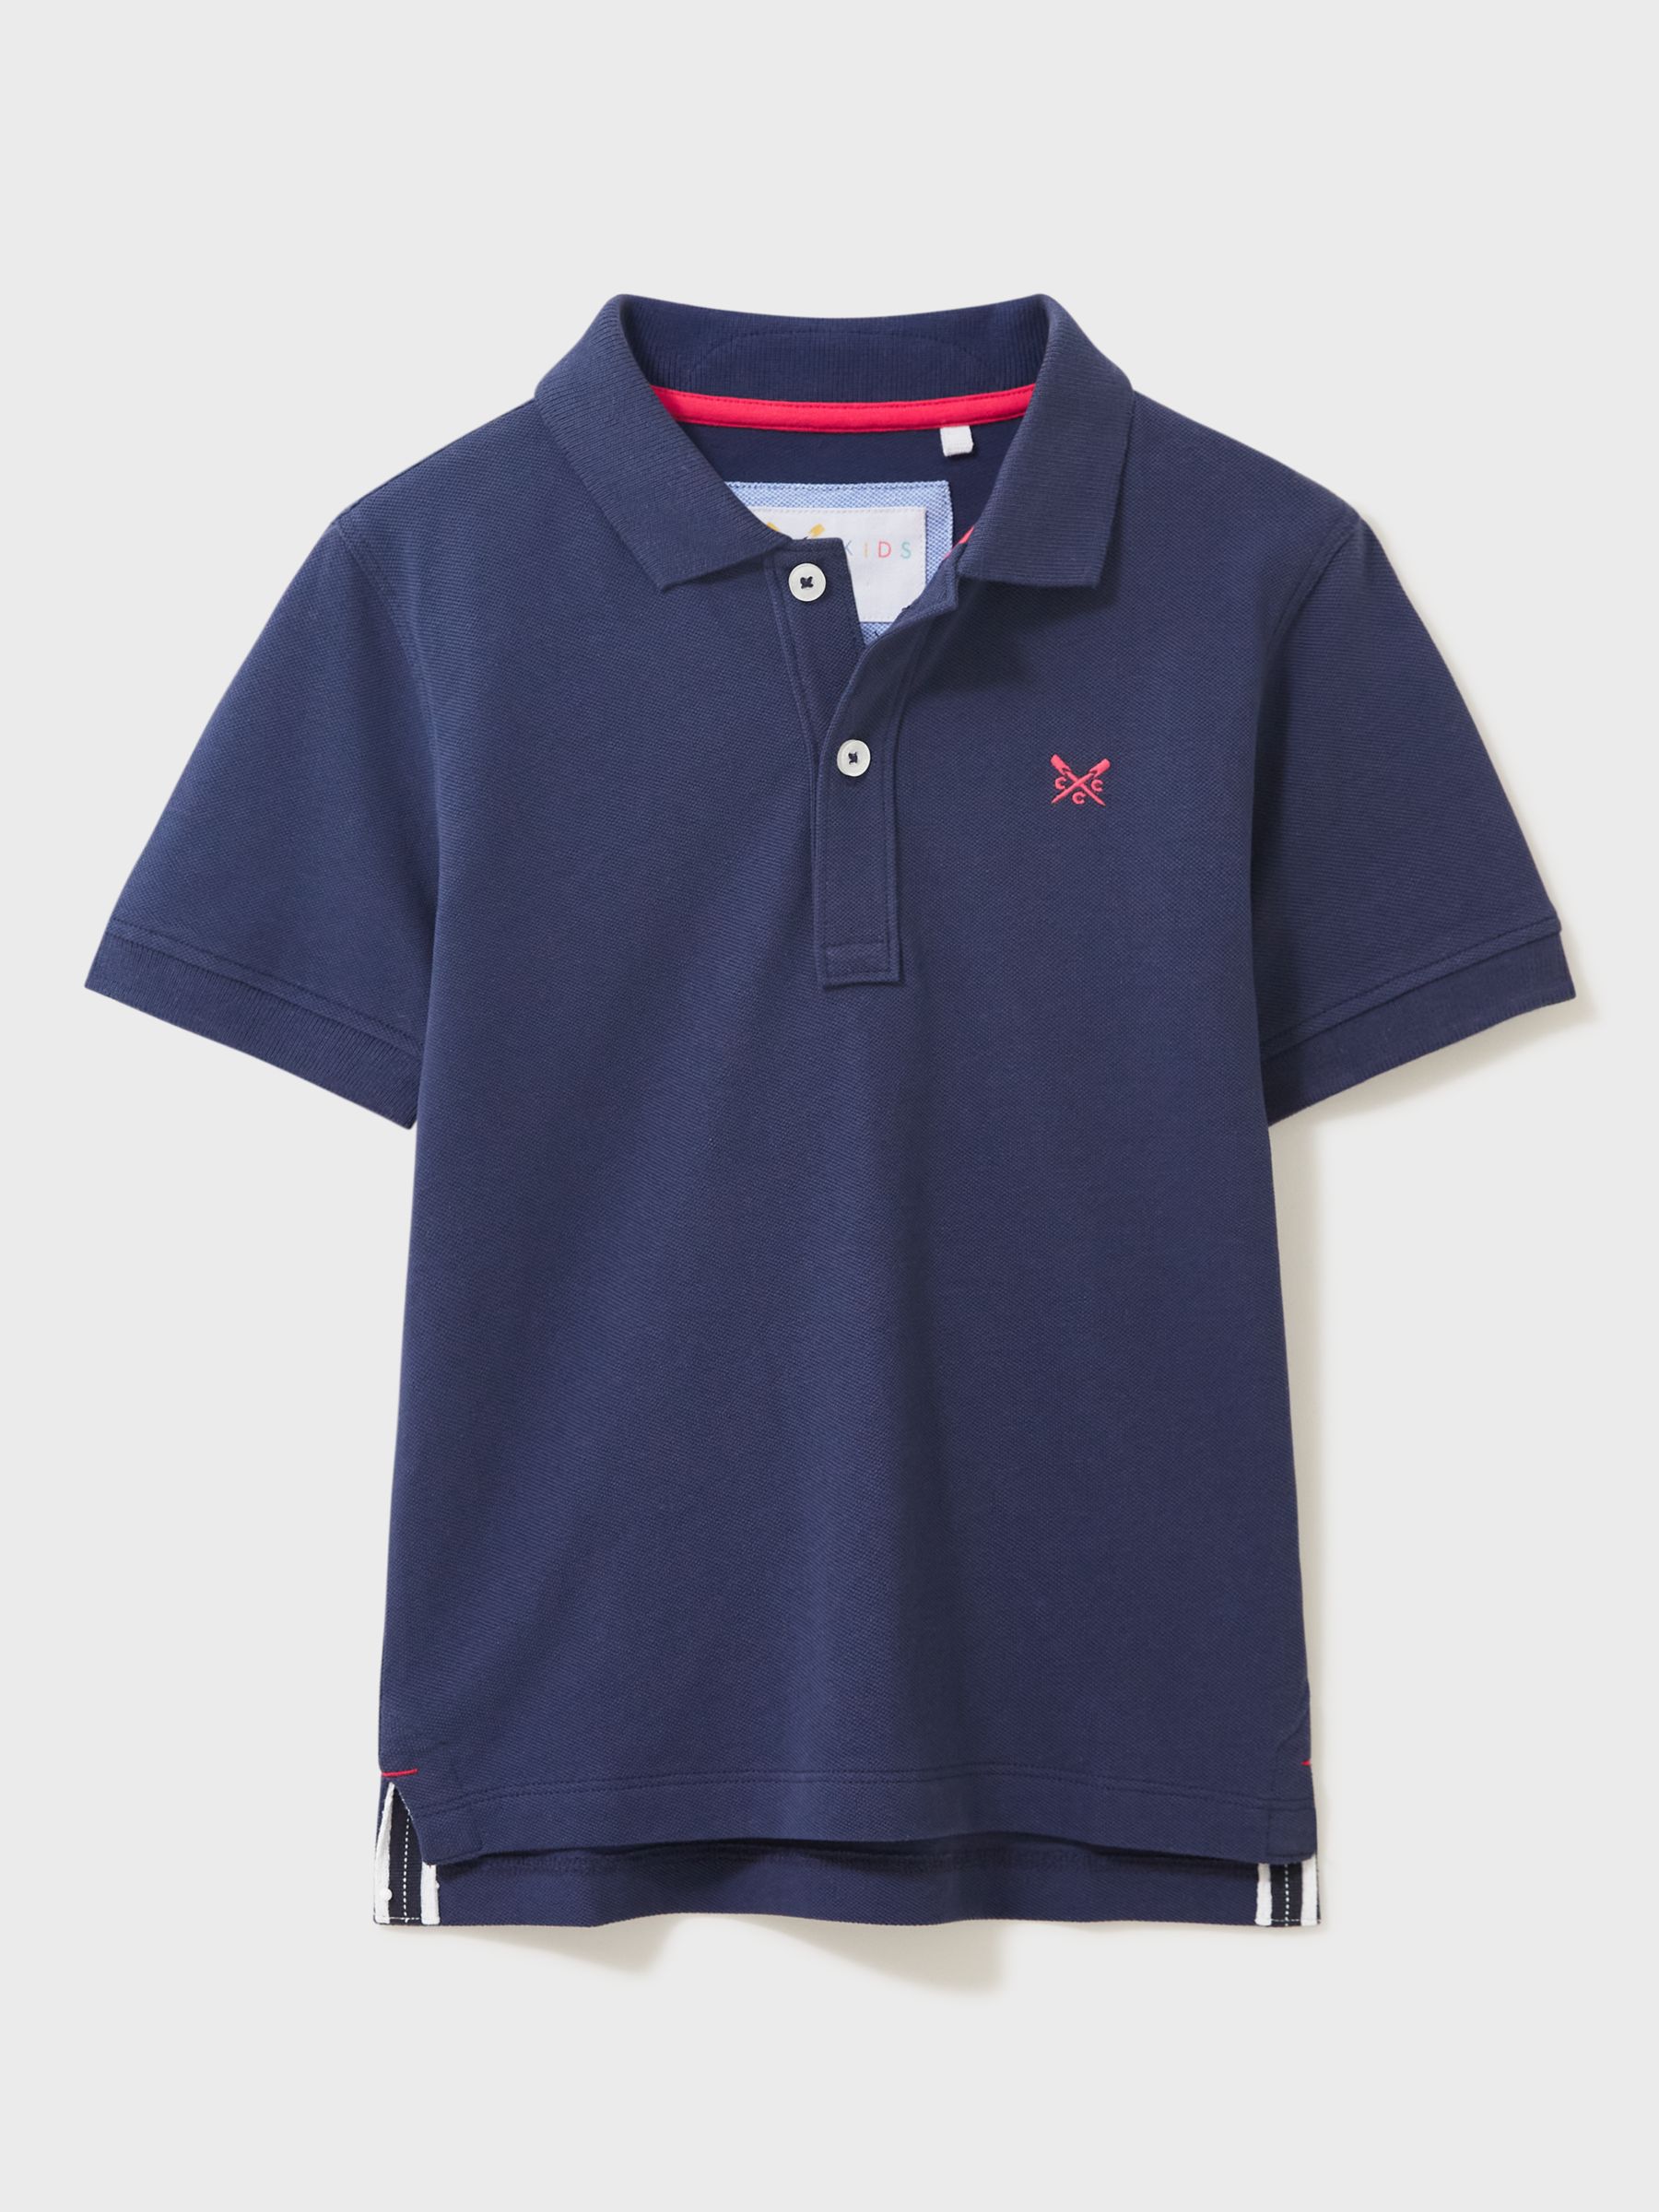 Детская рубашка-поло Crew Clothing, темно-синий рубашка поло для гольфа из хлопка с кантом crew clothing светло розовый